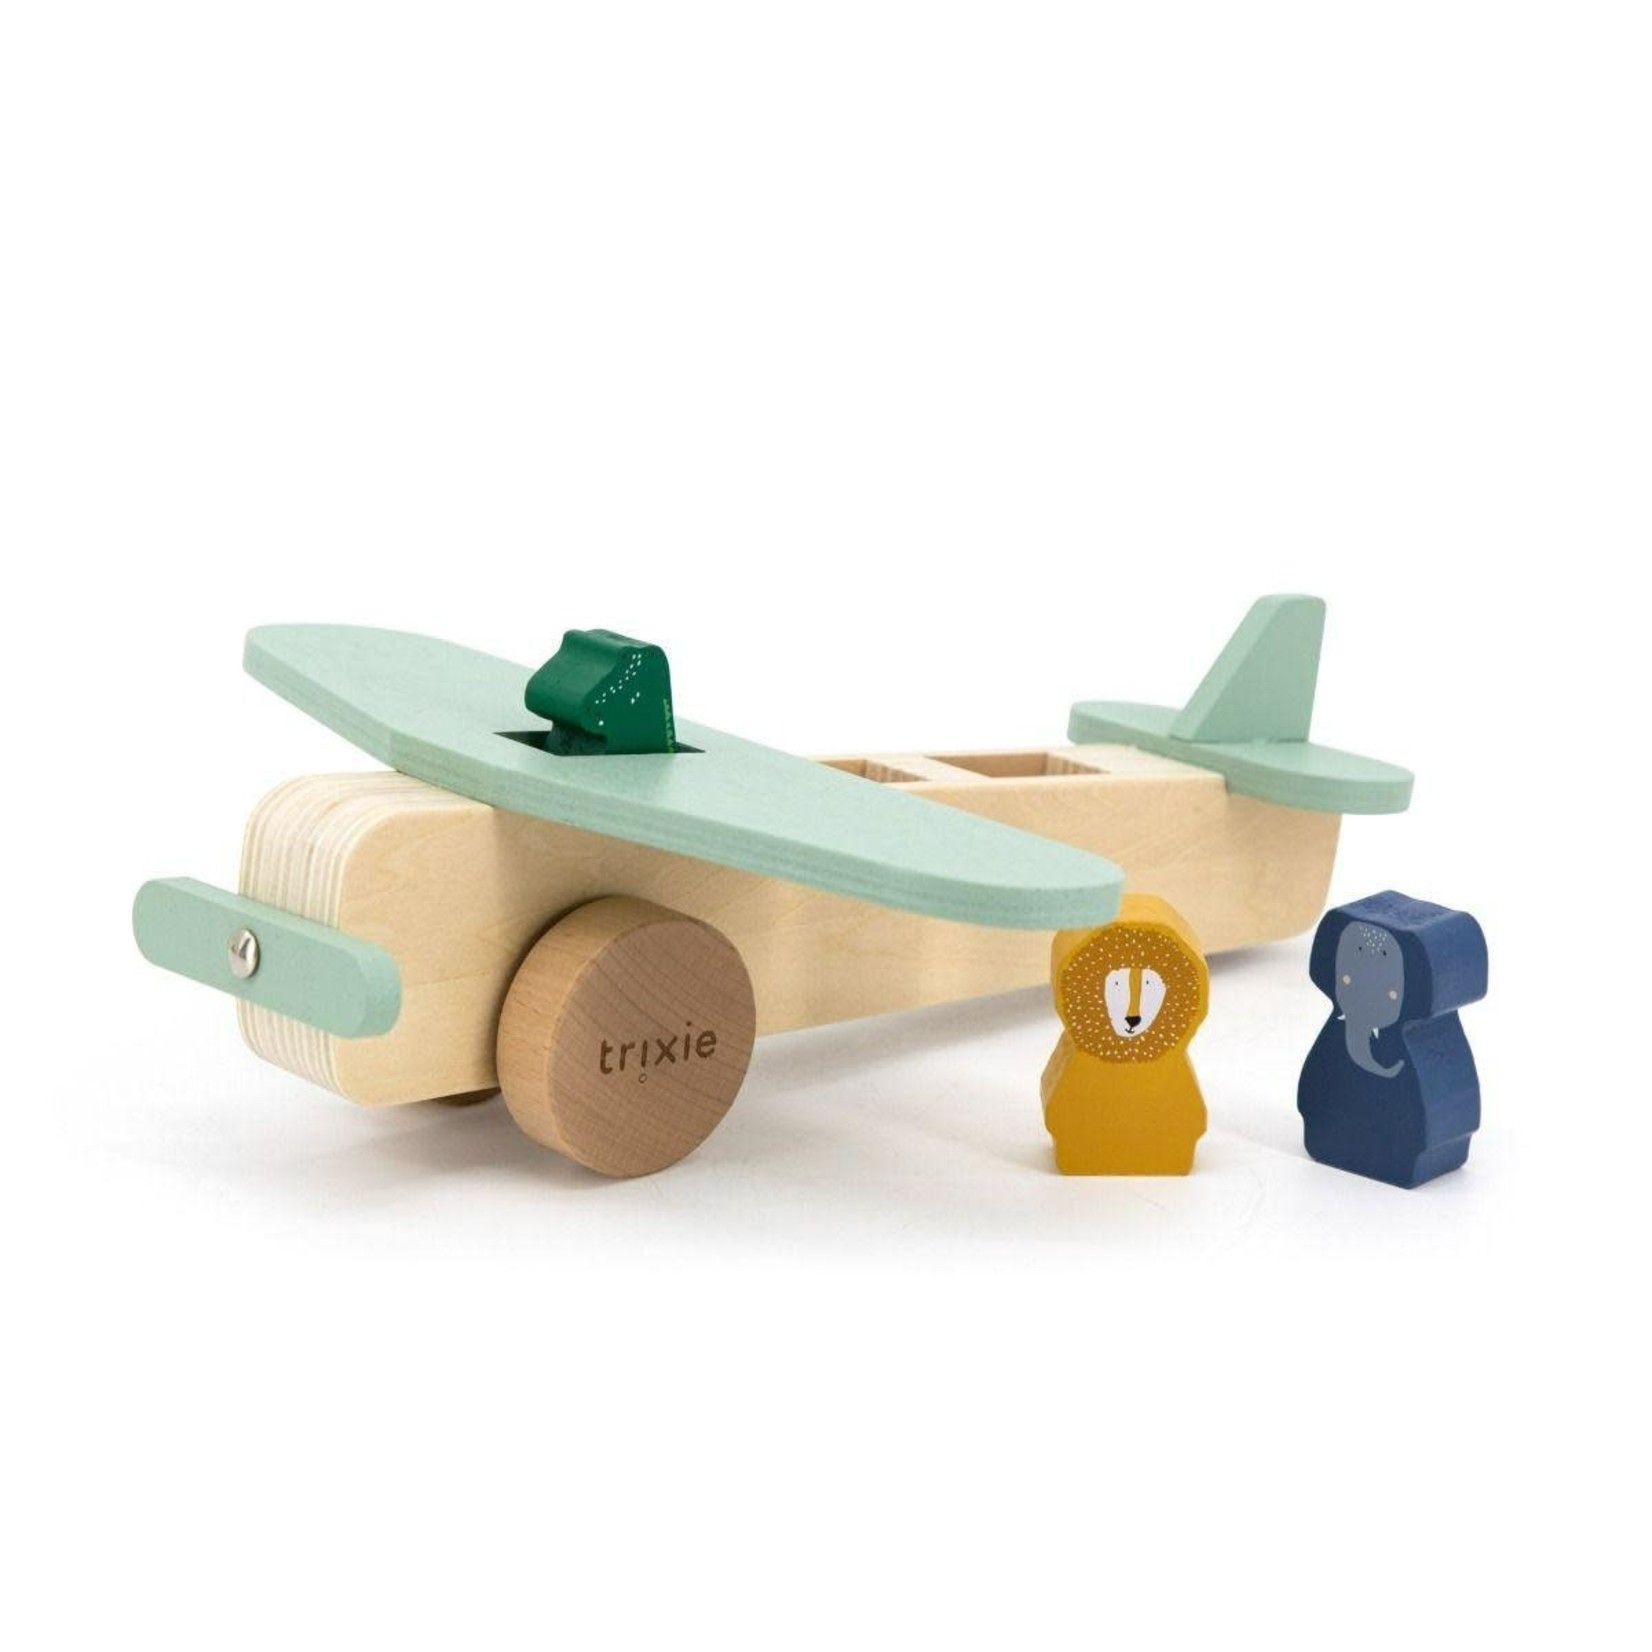 Trixie Trixie - Wooden animal airplane